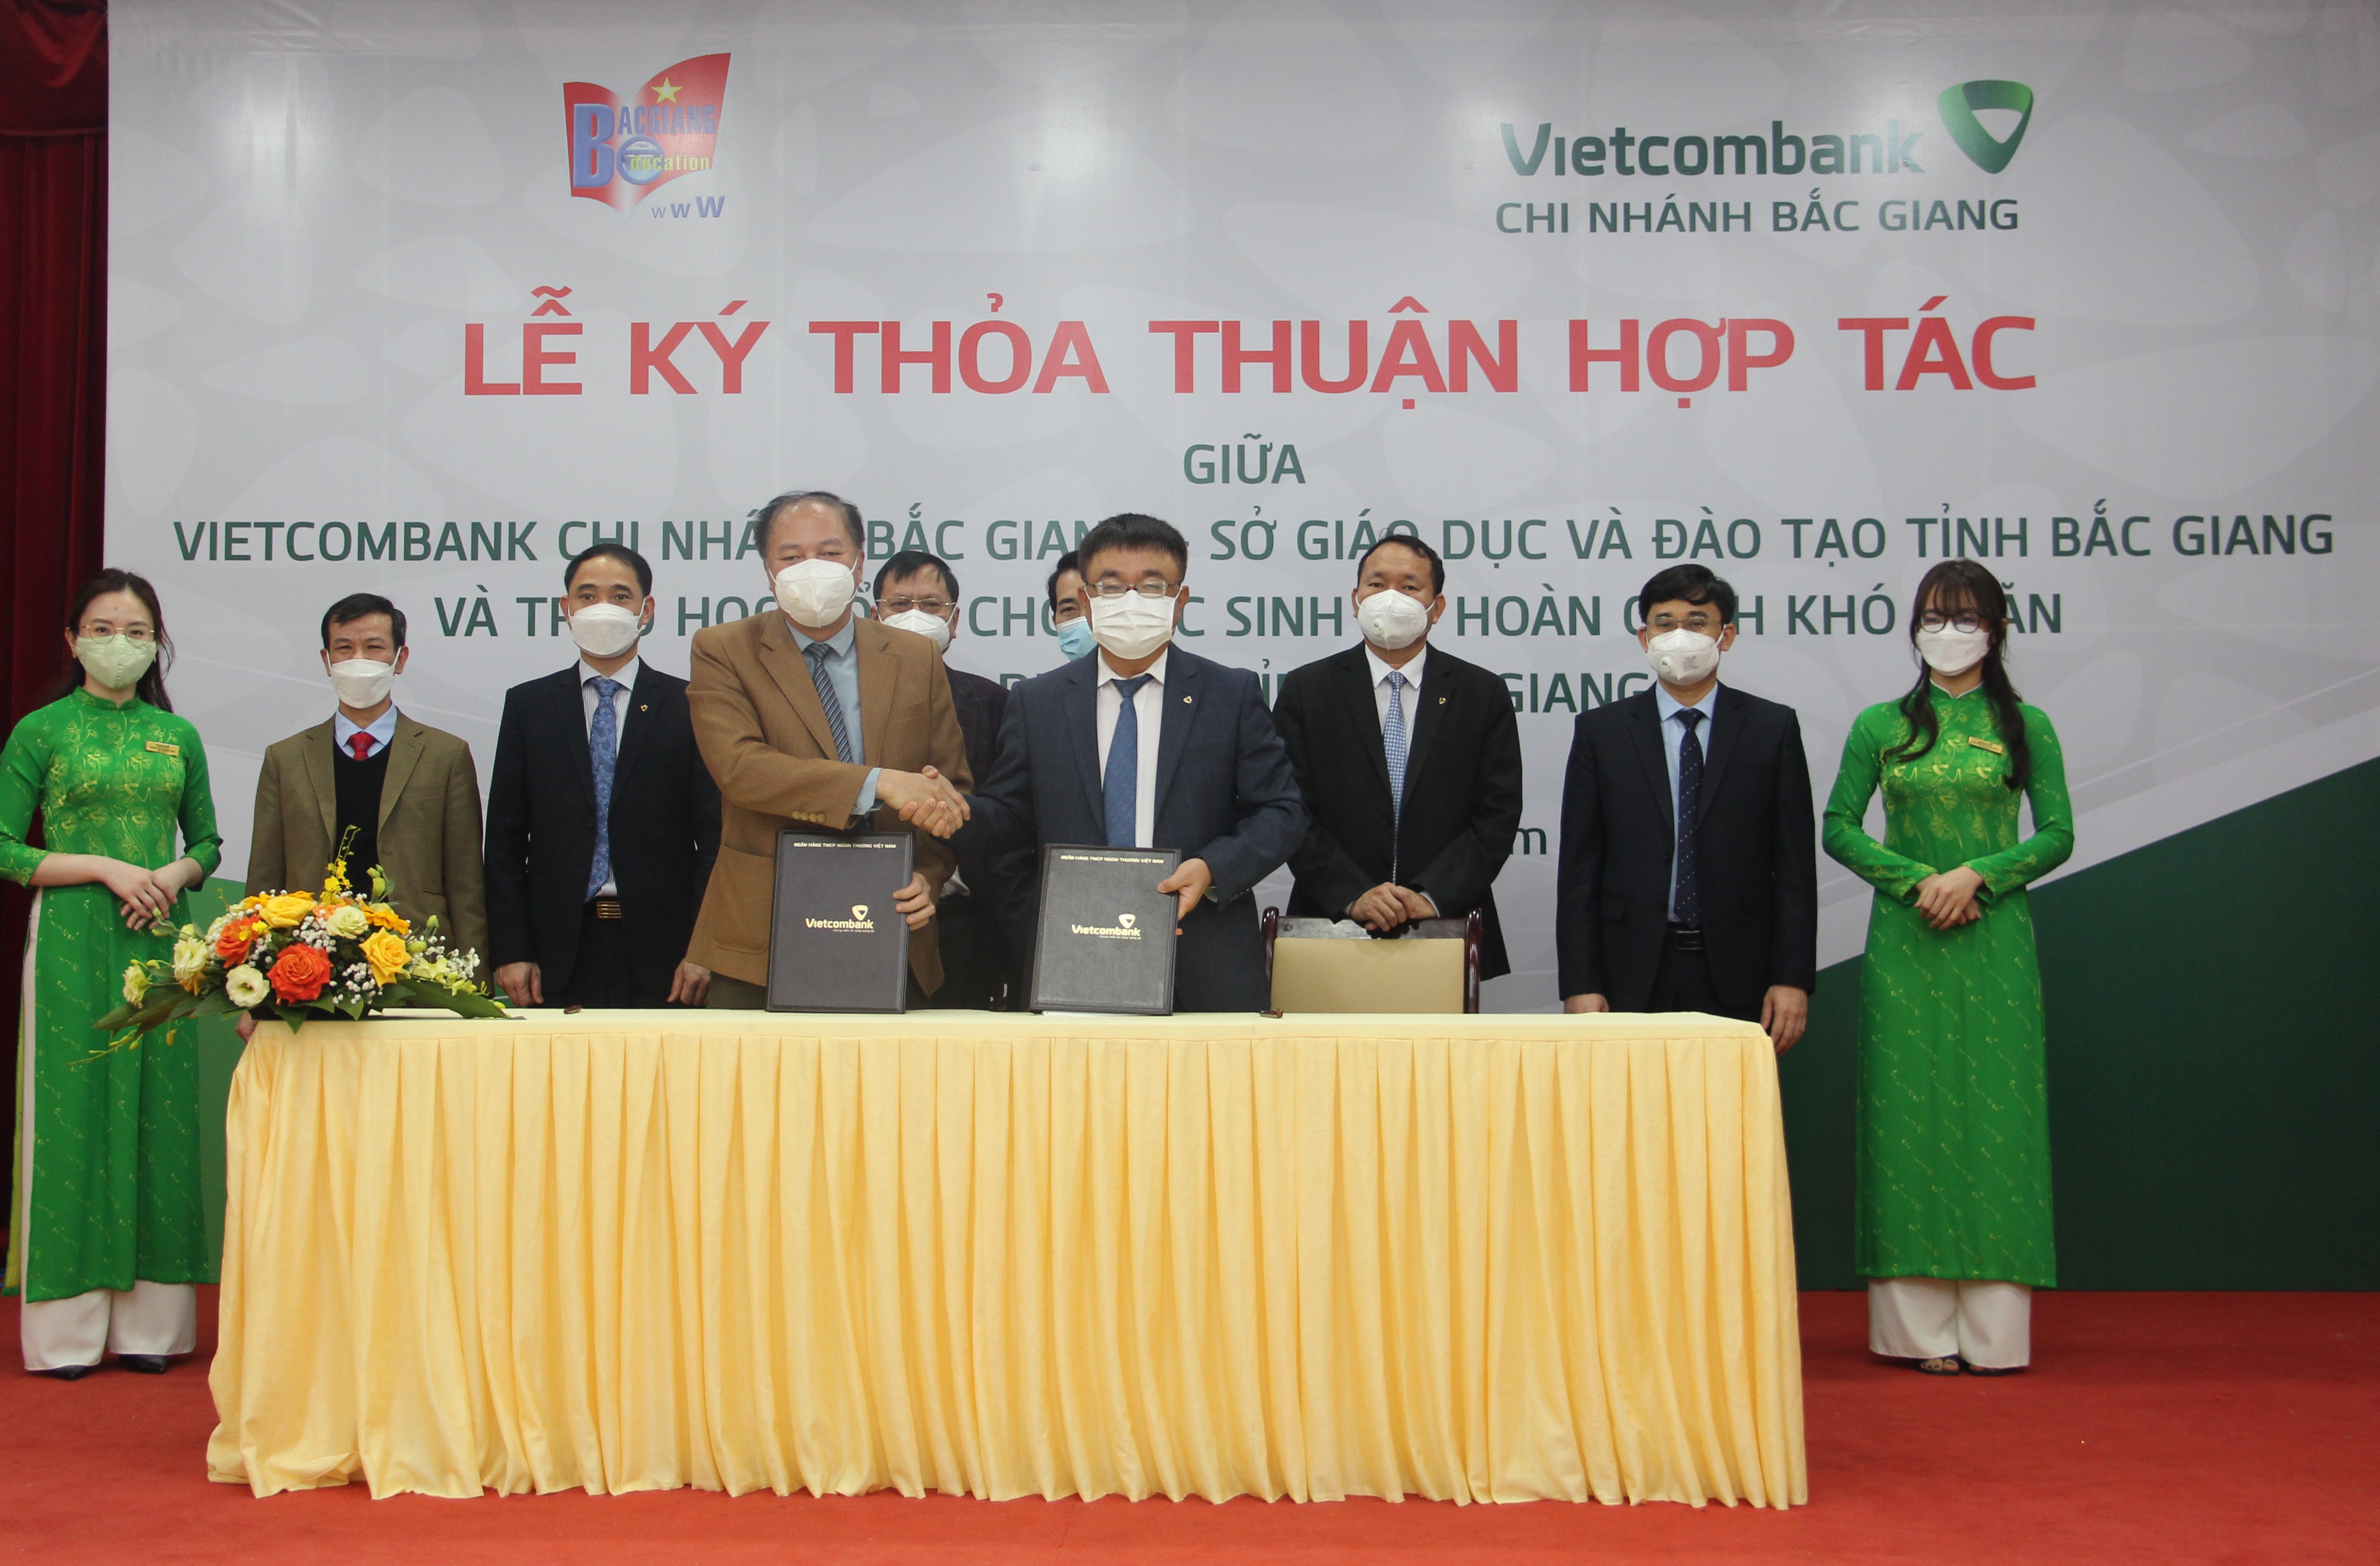 Vietcombank Bắc Giang tổ chức lễ ký thỏa thuận hợp tác với Sở Giáo dục và đào tạo tỉnh Bắc Giang 